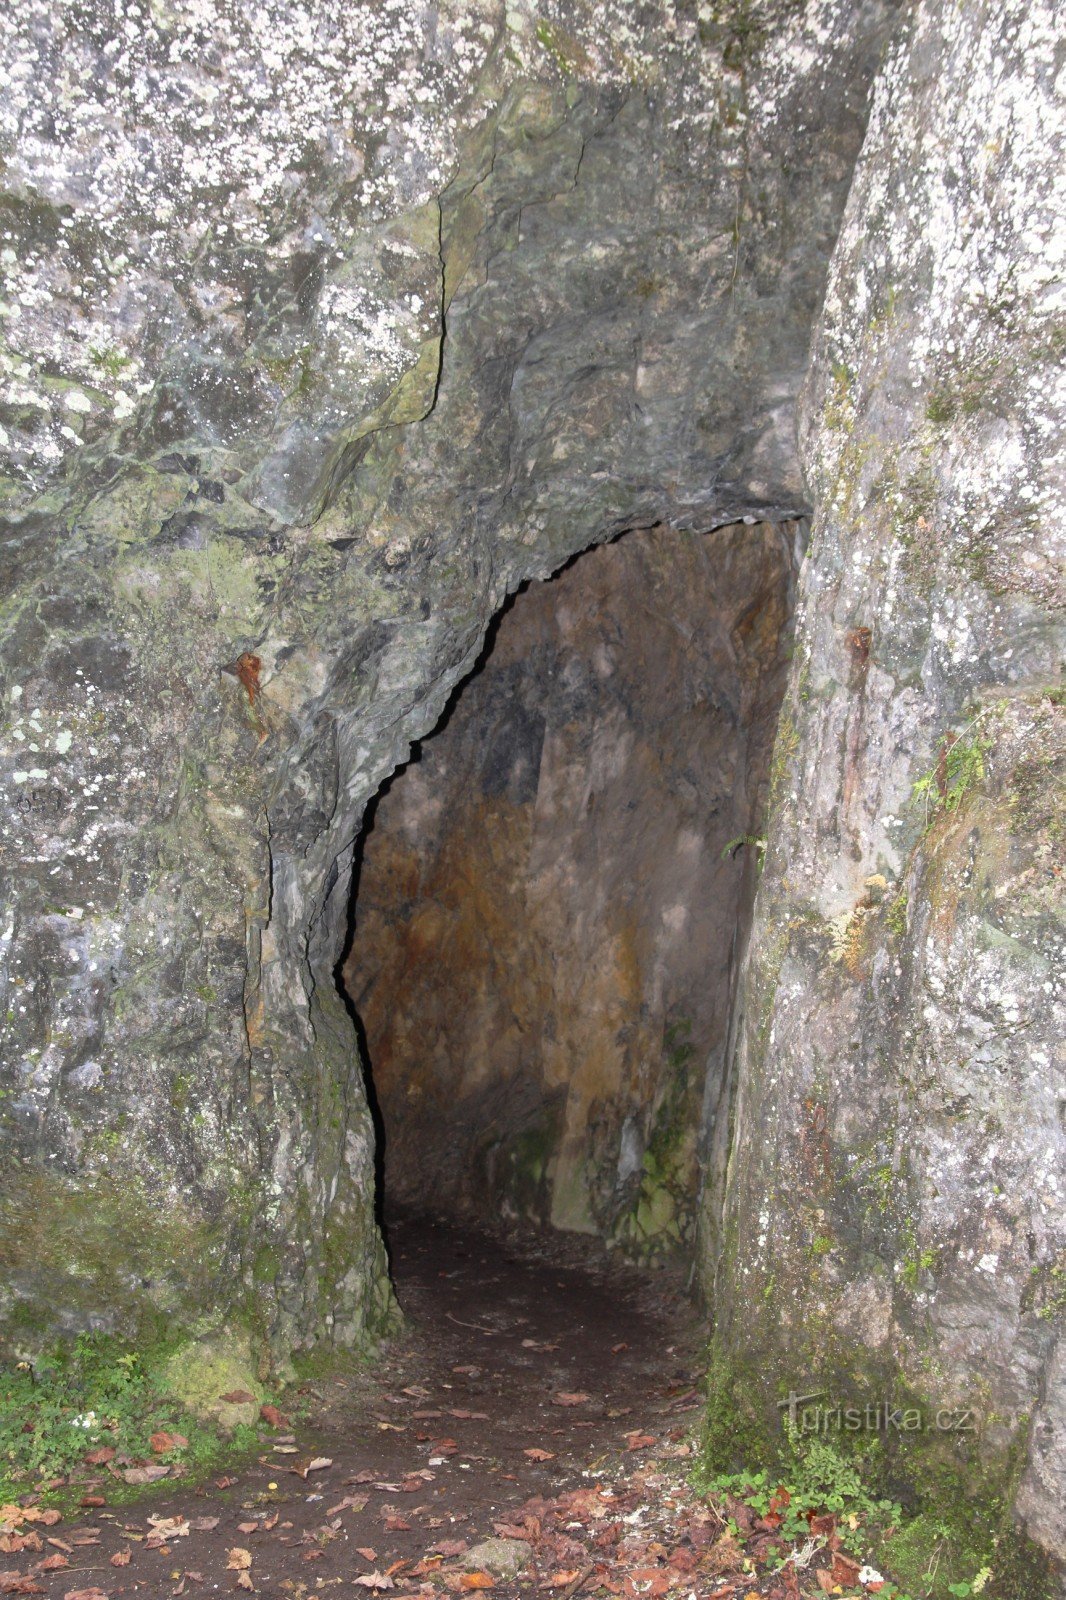 Είσοδος στο σπήλαιο Kalova díra